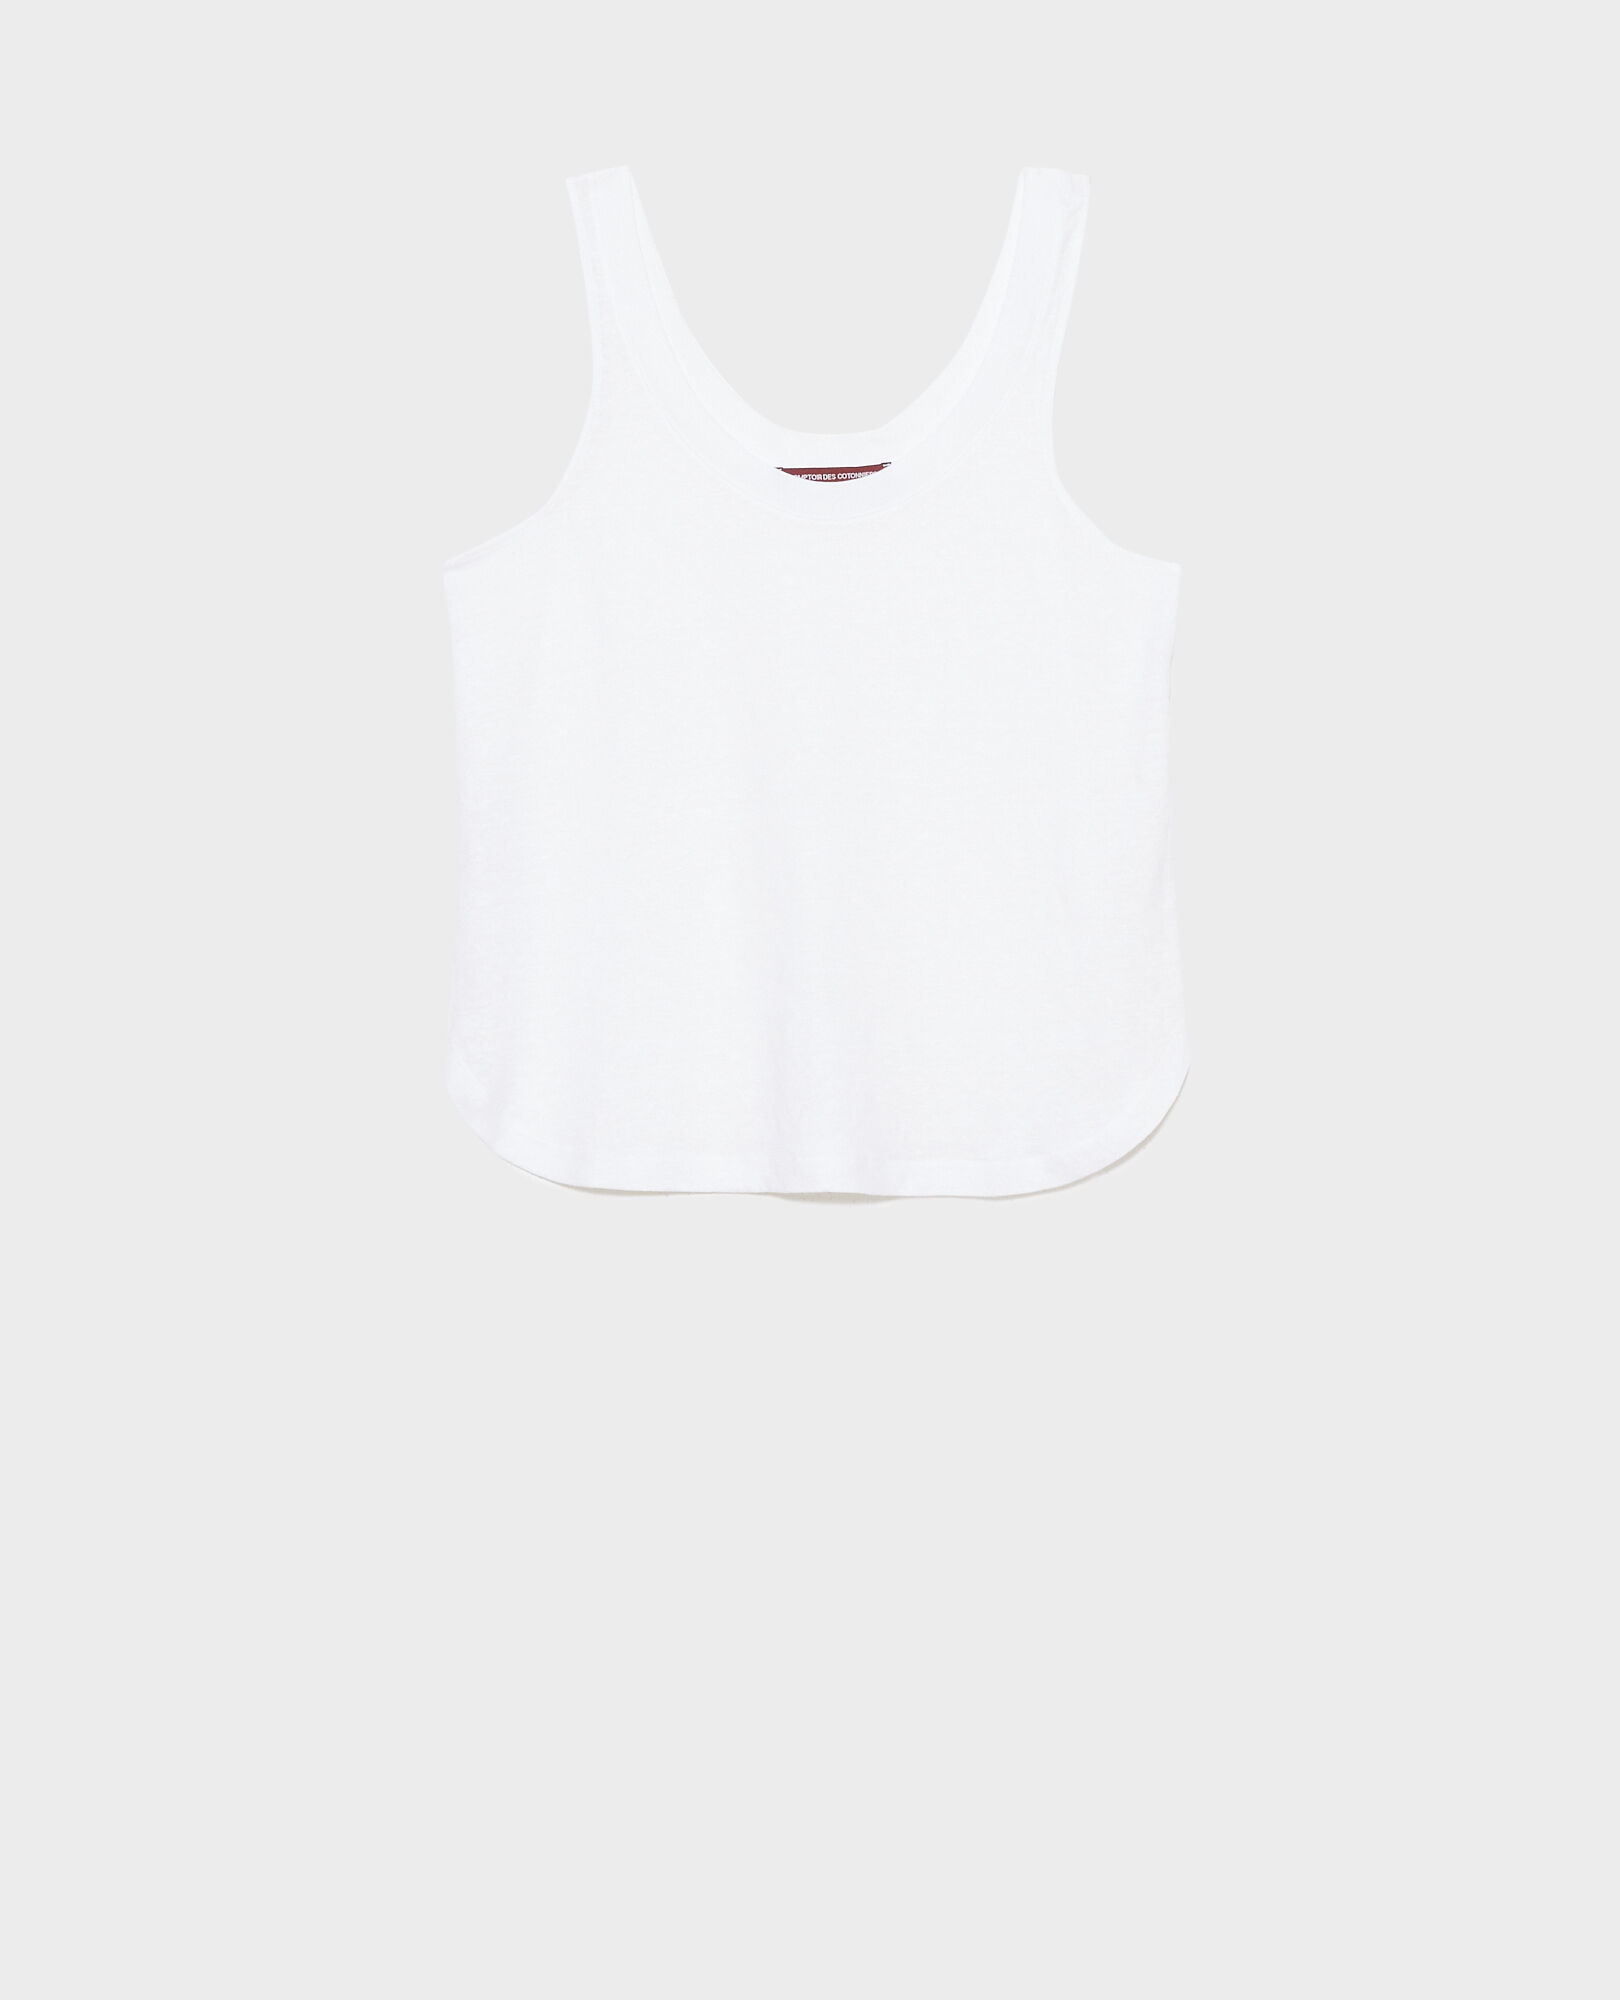 Camiseta de lino sin mangas 00 white 2ste054f05